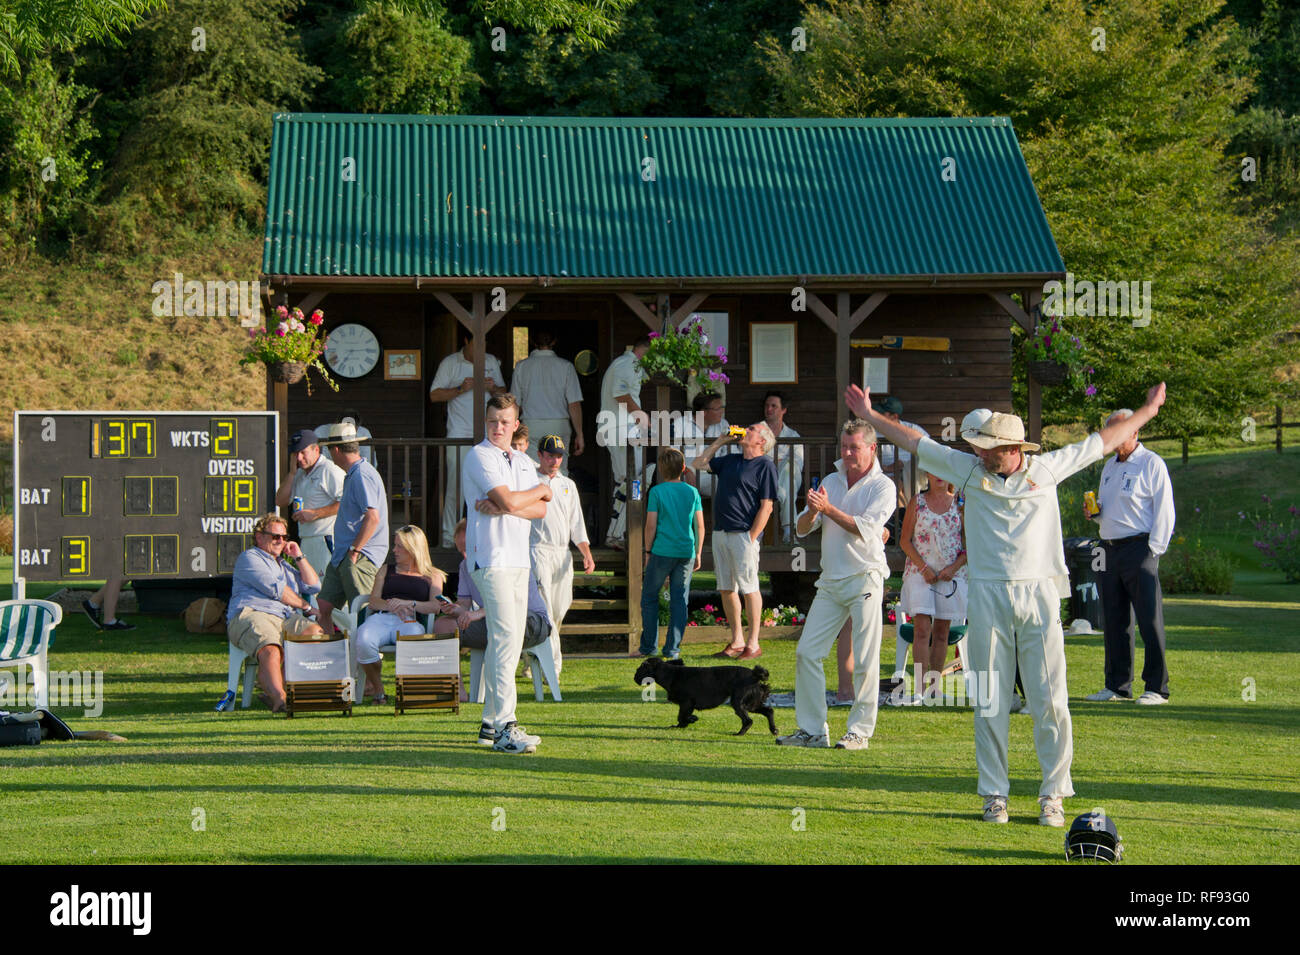 Maison Bowerswaine Gussage, Tous les Saints, Dorset, qui comprend son propre terrain de cricket en pleine dimension Banque D'Images